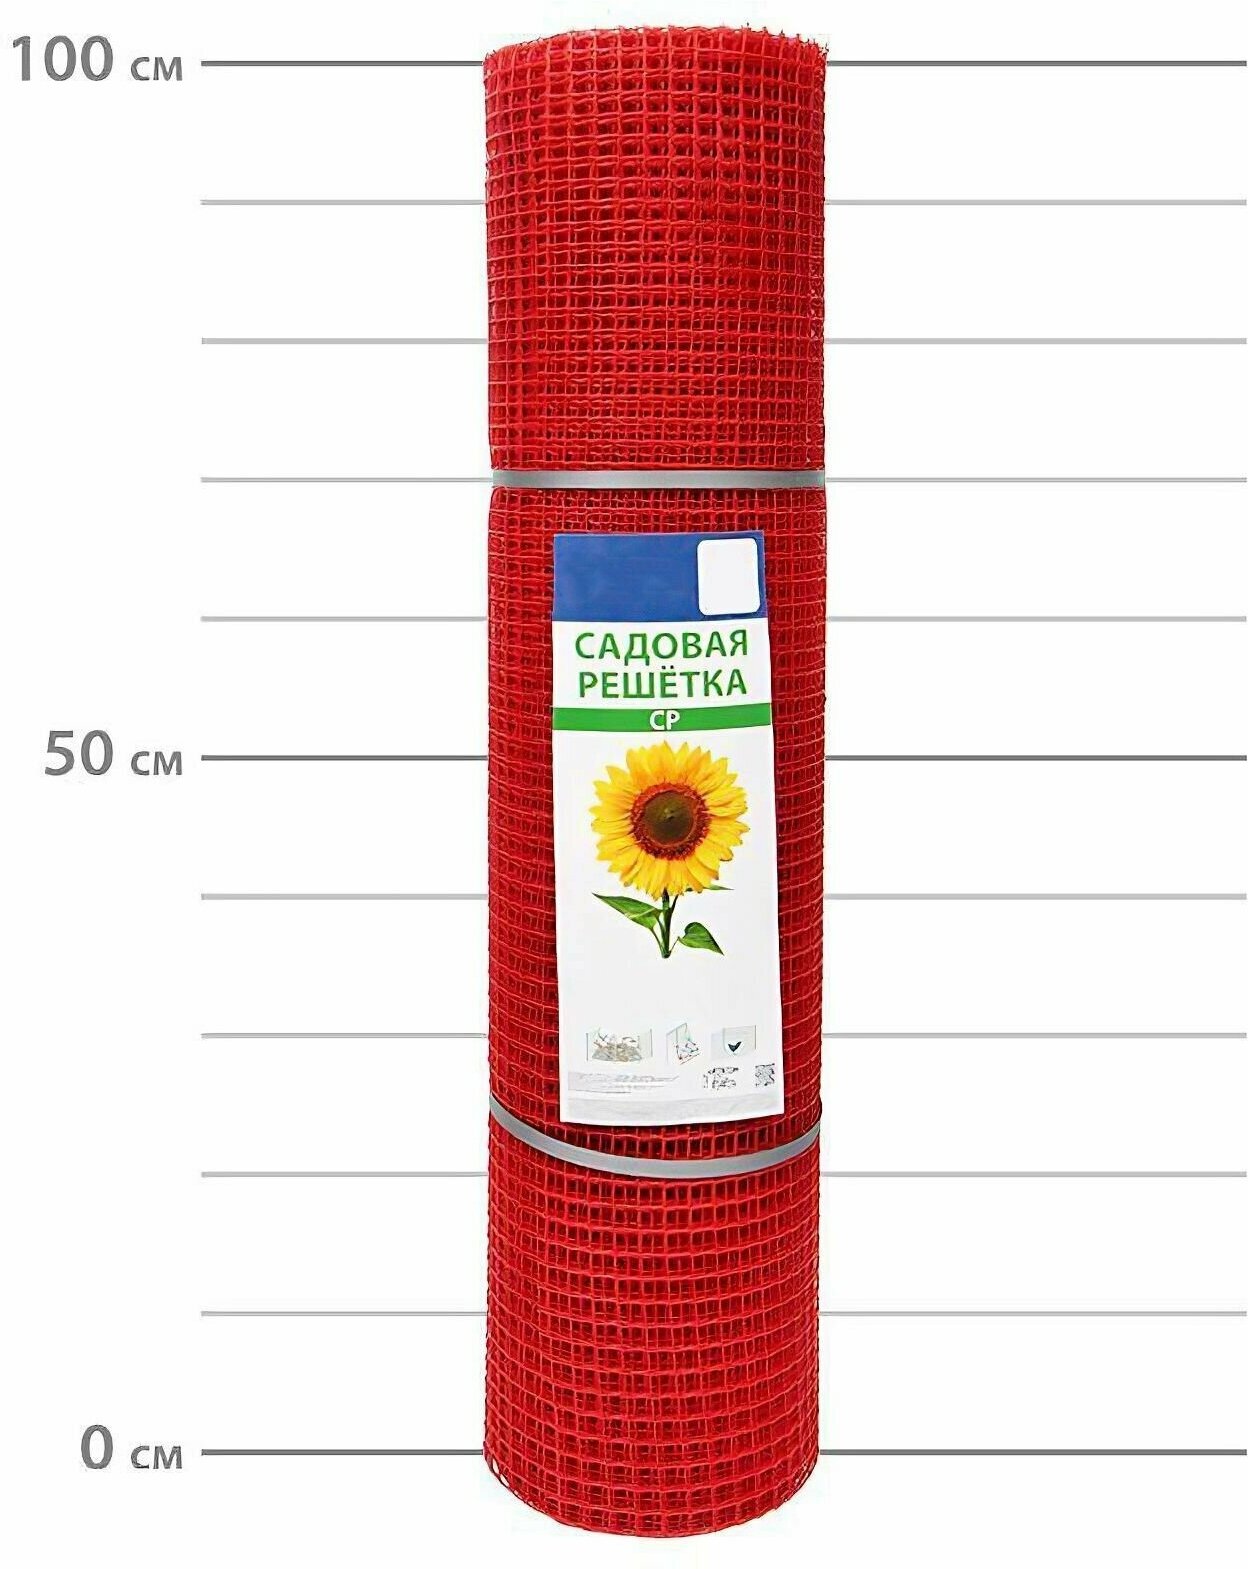 Универсальная заборная сетка решетка пластиковая размер 1x20м цвет красный ячейка 15x15мм. Служит идеальной опорой для вертикальной поддержки вьющихся и лазающих растений.